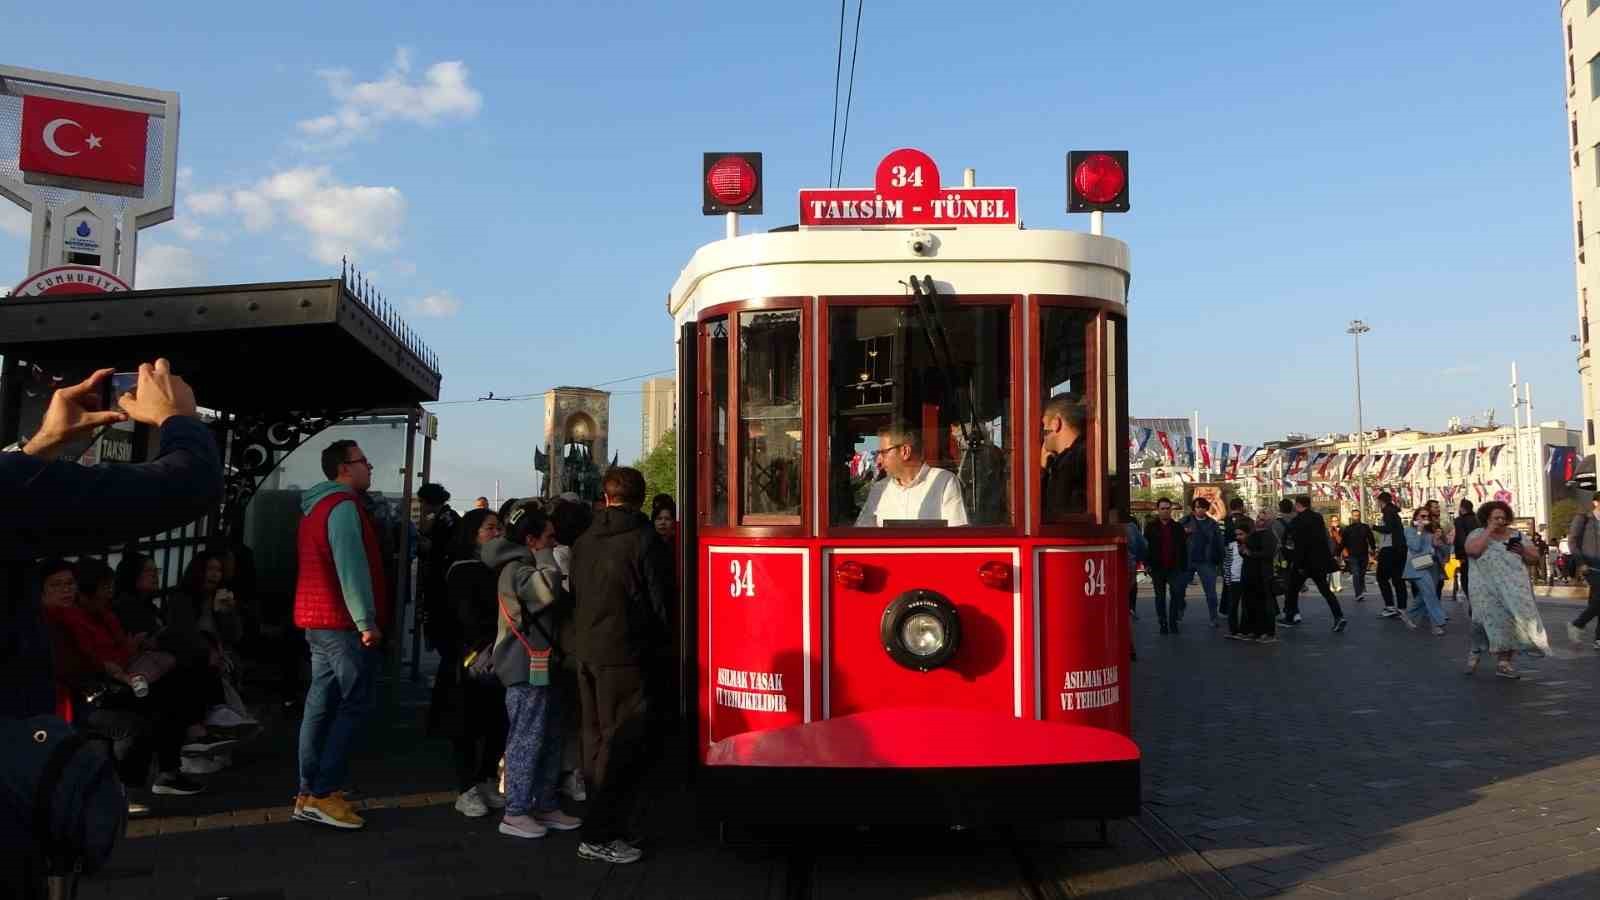 taksimde test surusune cikan akulu nostaljik tramvaya vatandaslar yogun ilgi gosterdi 0